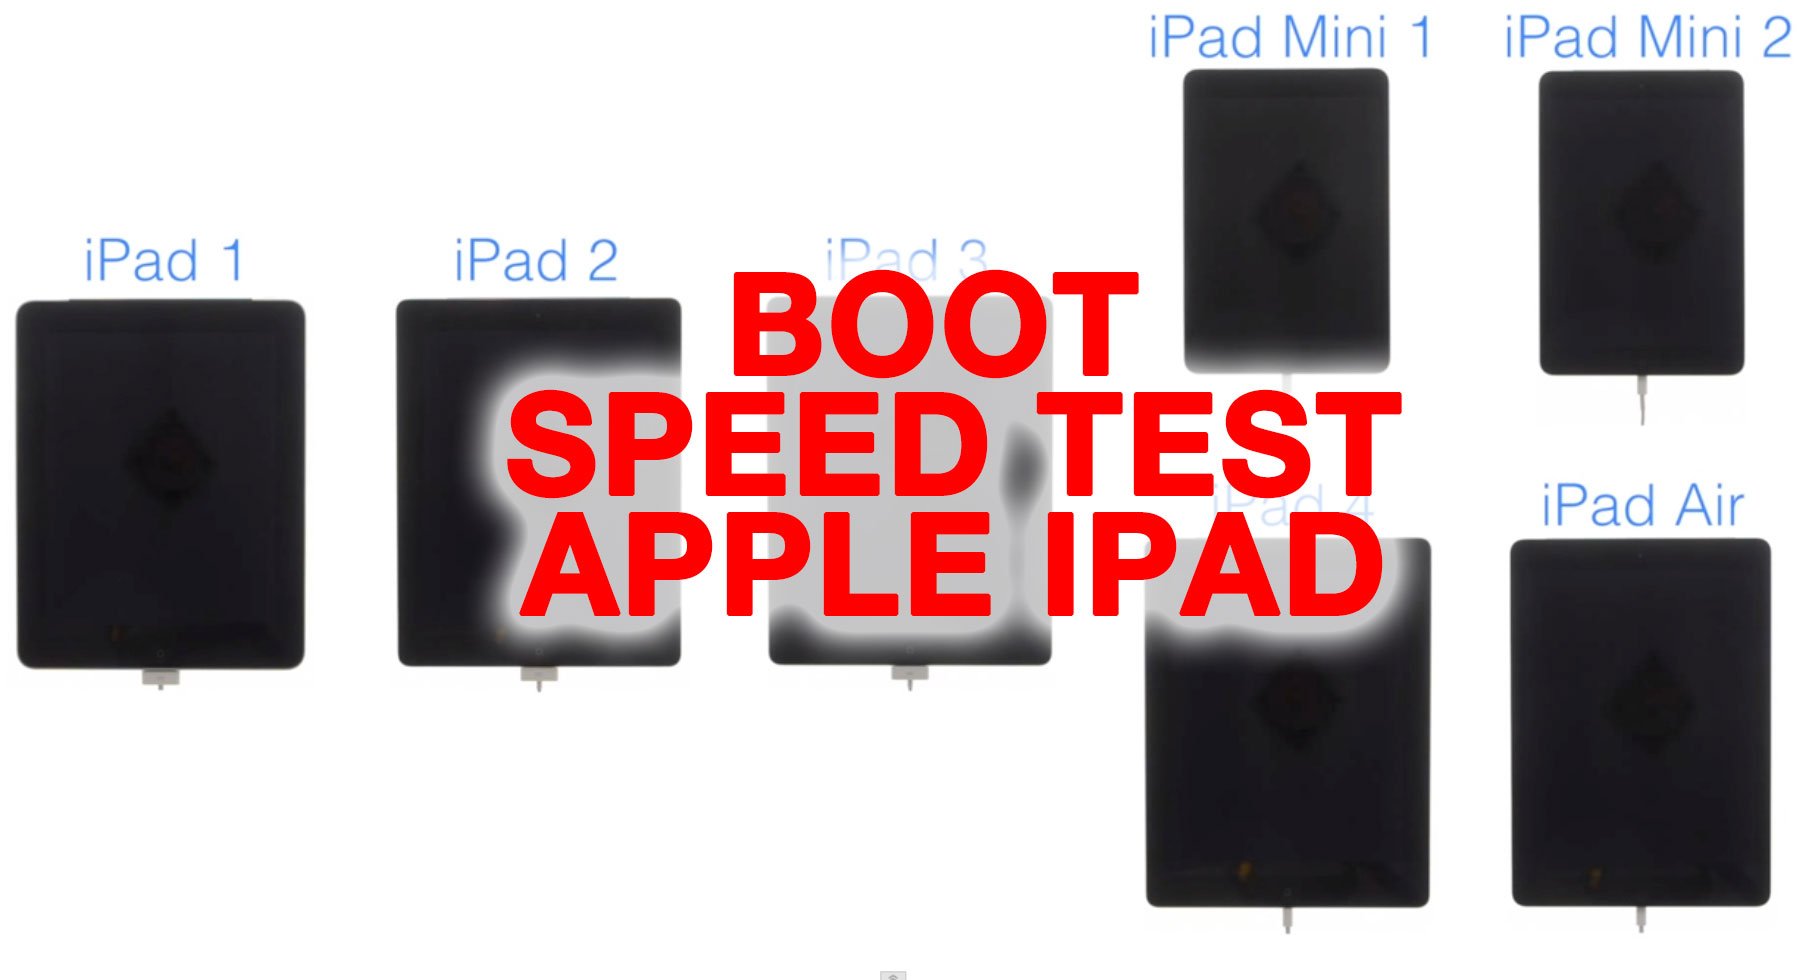 Video: Boot-Speed Test iPad Air vs. Retina iPad mini vs. iPad mini vs. iPad 4, iPad 3, iPad 2 vs. iPad 1 1